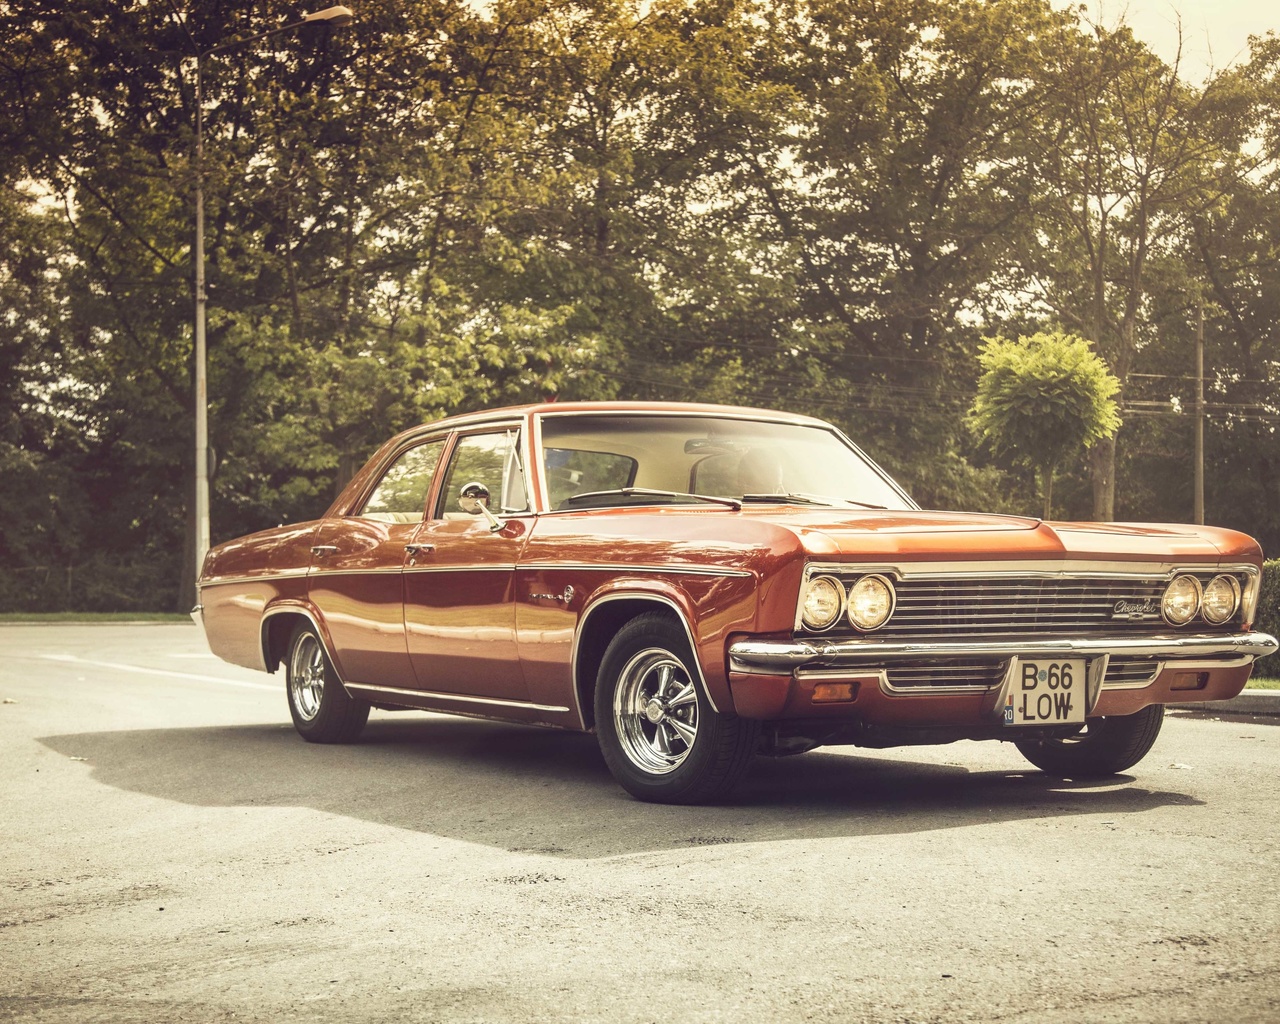 chevrolet, impala, 1966